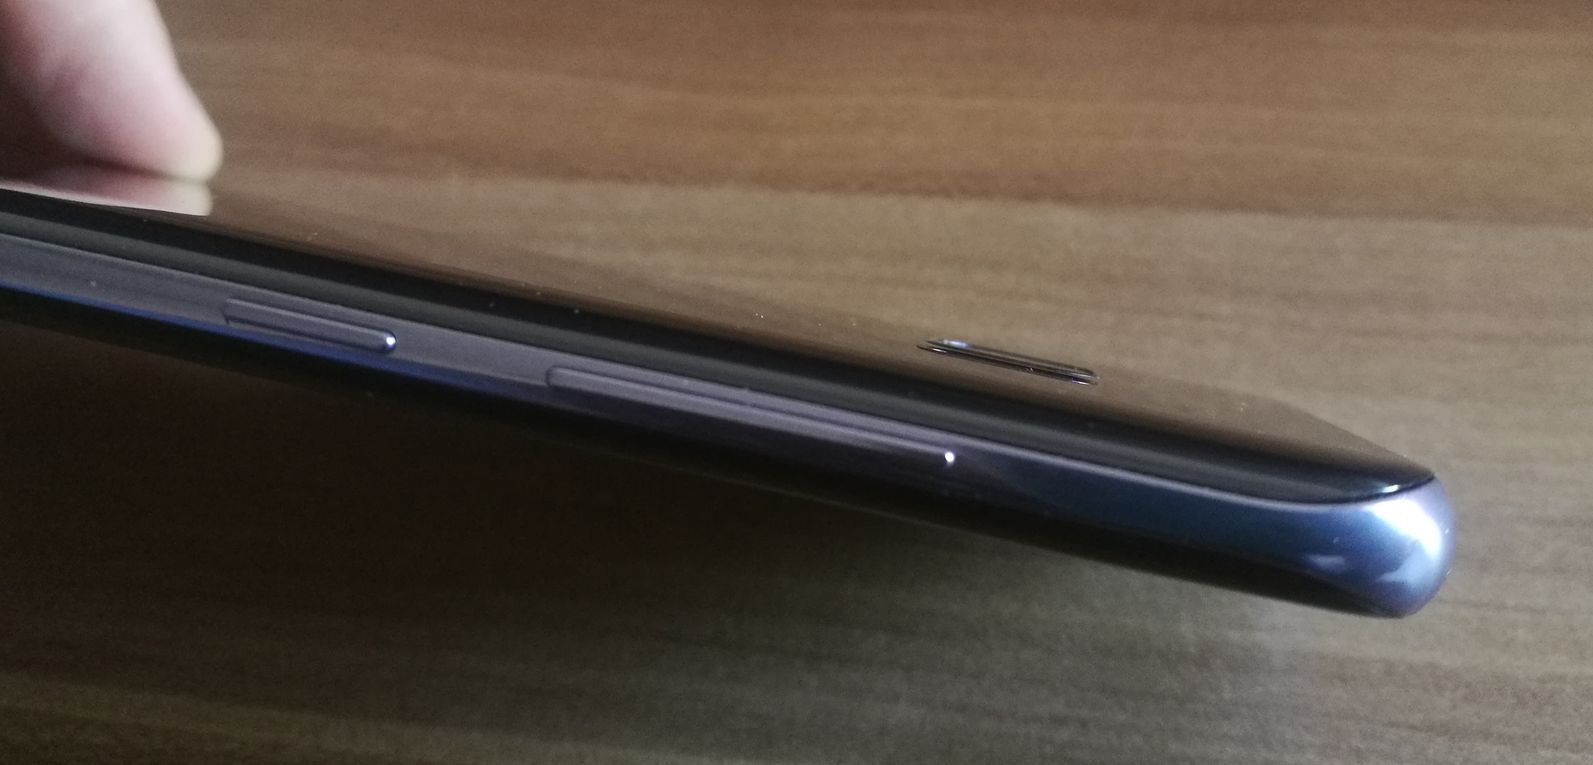 Samsung Galaxy S8+, lo hemos probado 22